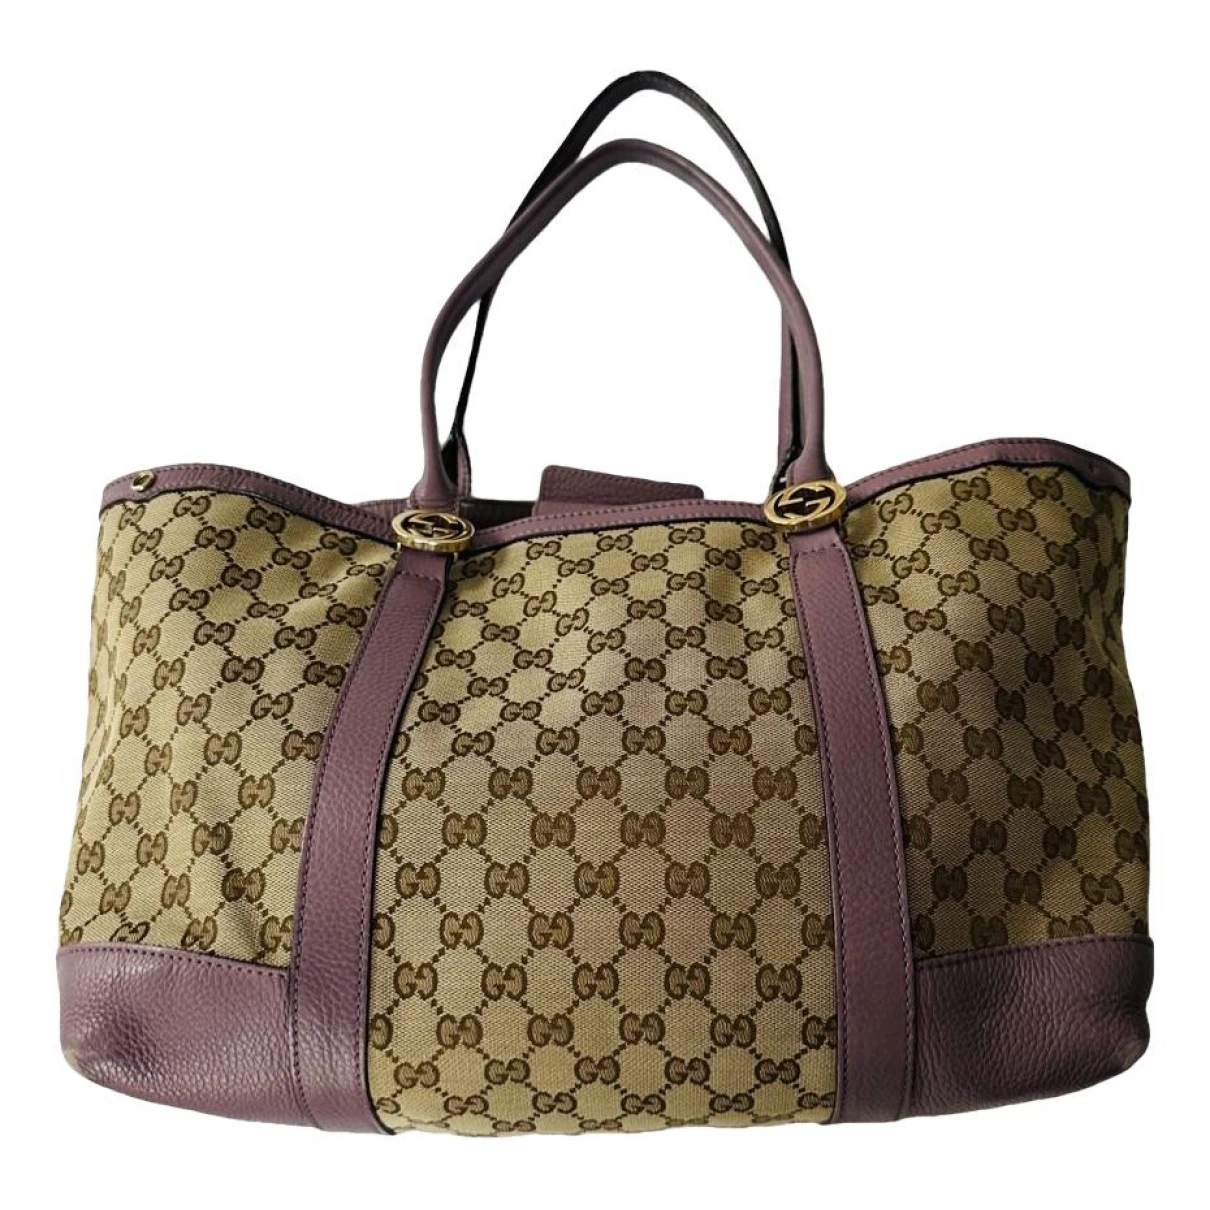 Pre-owned Gucci Handbag In Purple